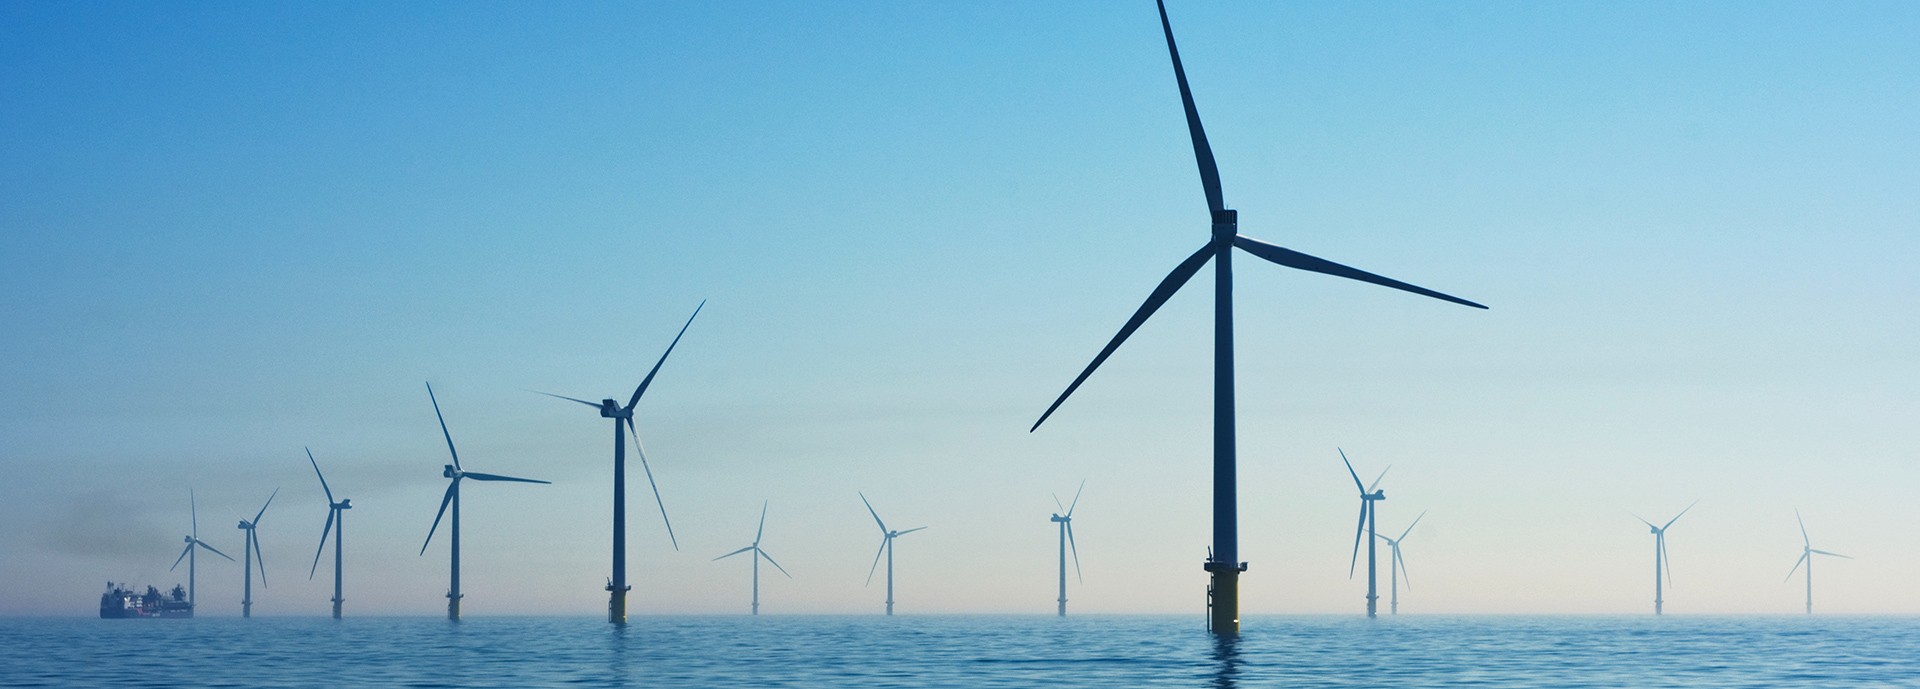 offshore wind turbines in open water vista